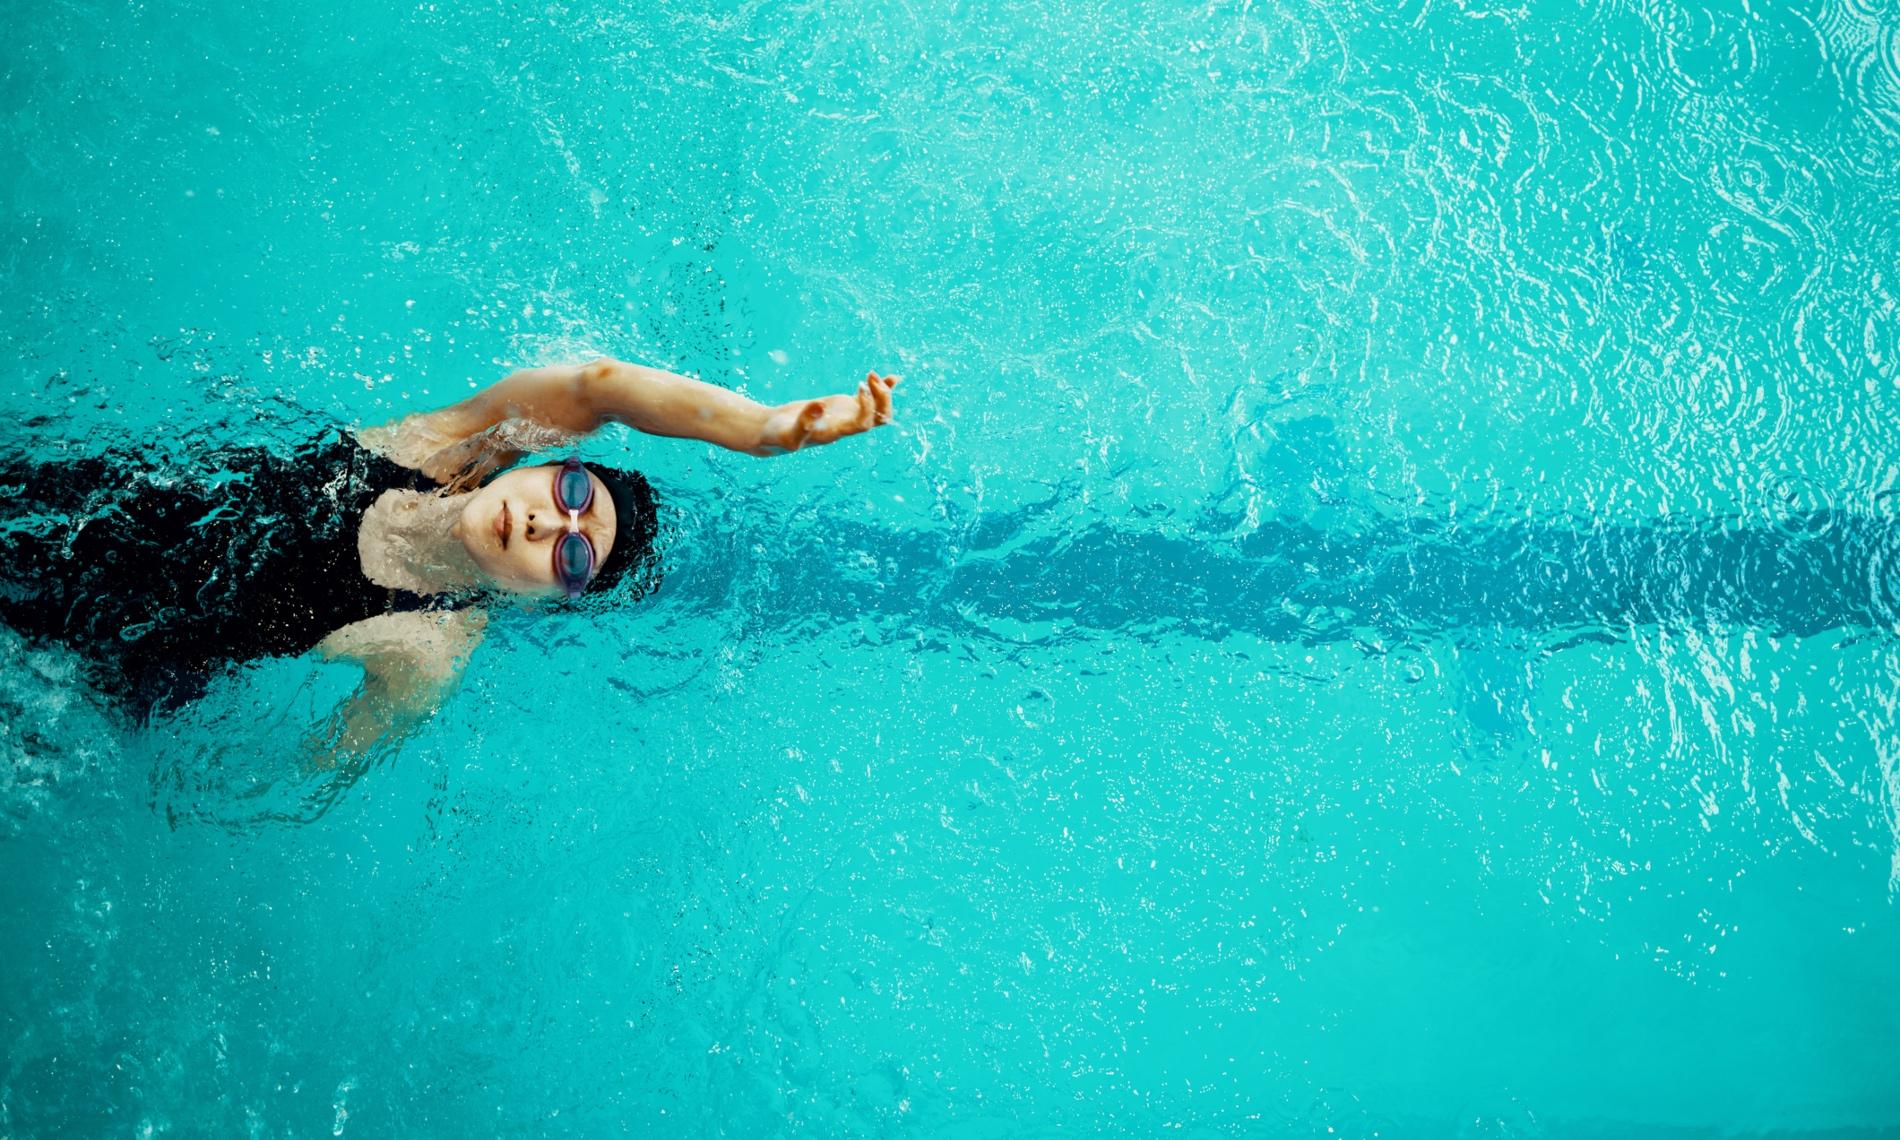 La natation, l'ultime sport pour un corps musclé et affiné